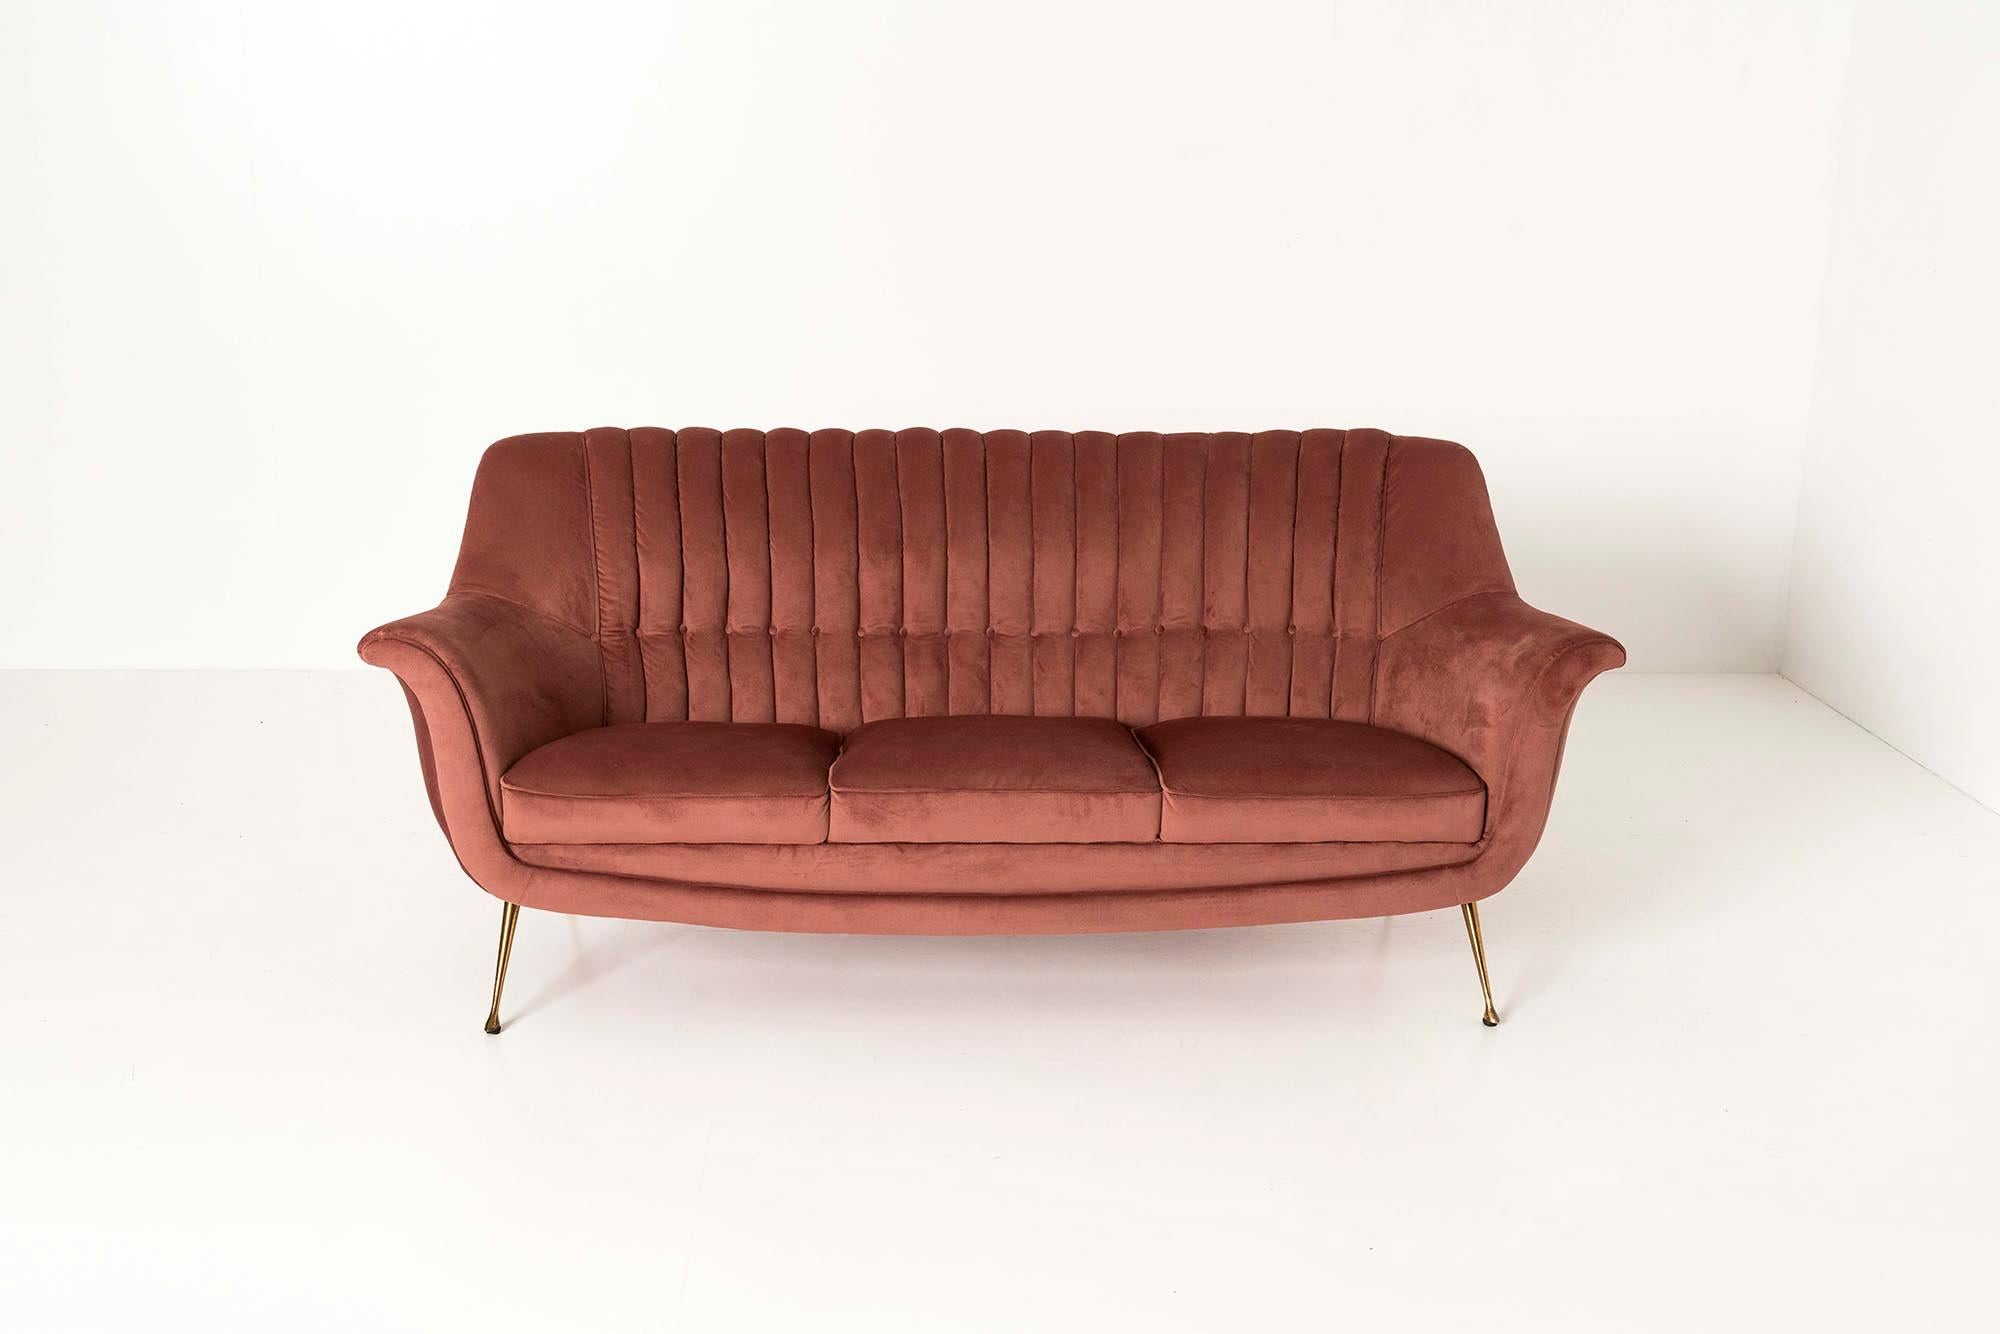 Elegantes italienisches Dreisitzersofa aus dunkelrosa Samt aus den 1950er Jahren. Dieses elegante Dreisitzer-Sofa hätte in einer schönen Kulisse eines italienischen Films aus den 1950er Jahren nicht fehl am Platz gewirkt. Die Rückenlehne ist